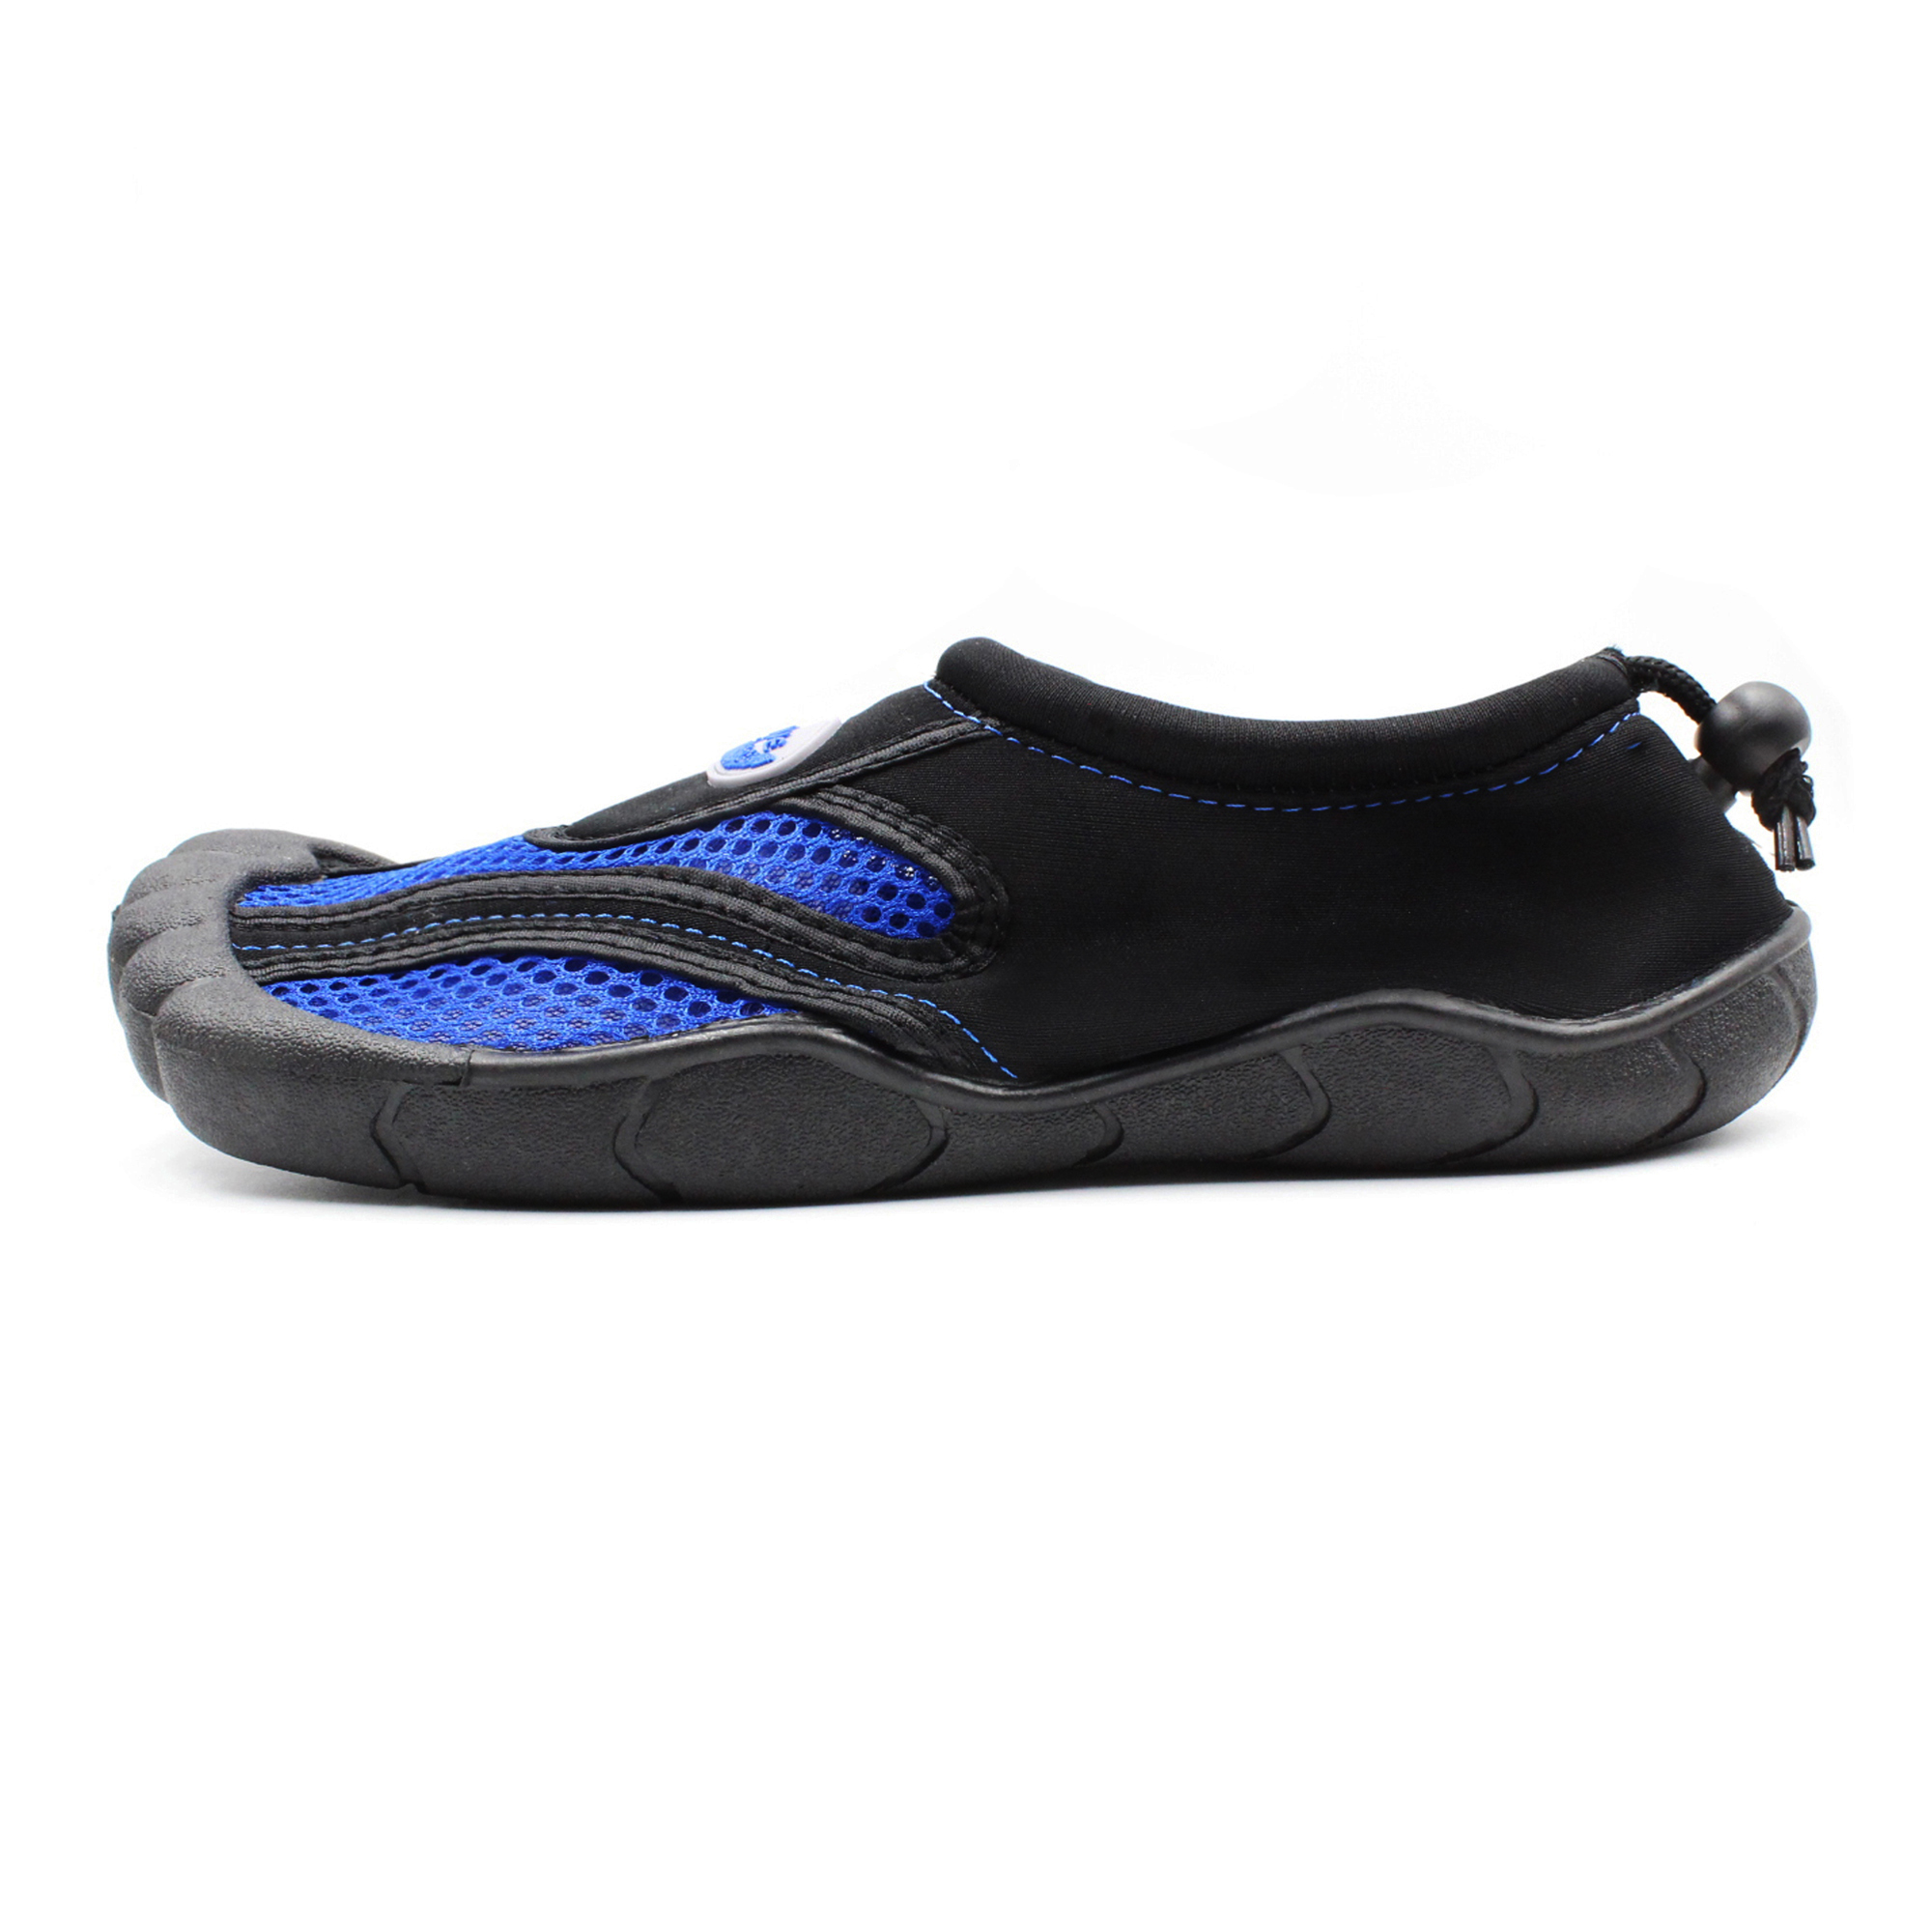 New Men's Mesh Athletic Mesh Water Shoes Aqua Socks Surf Beach Pool Shoes 